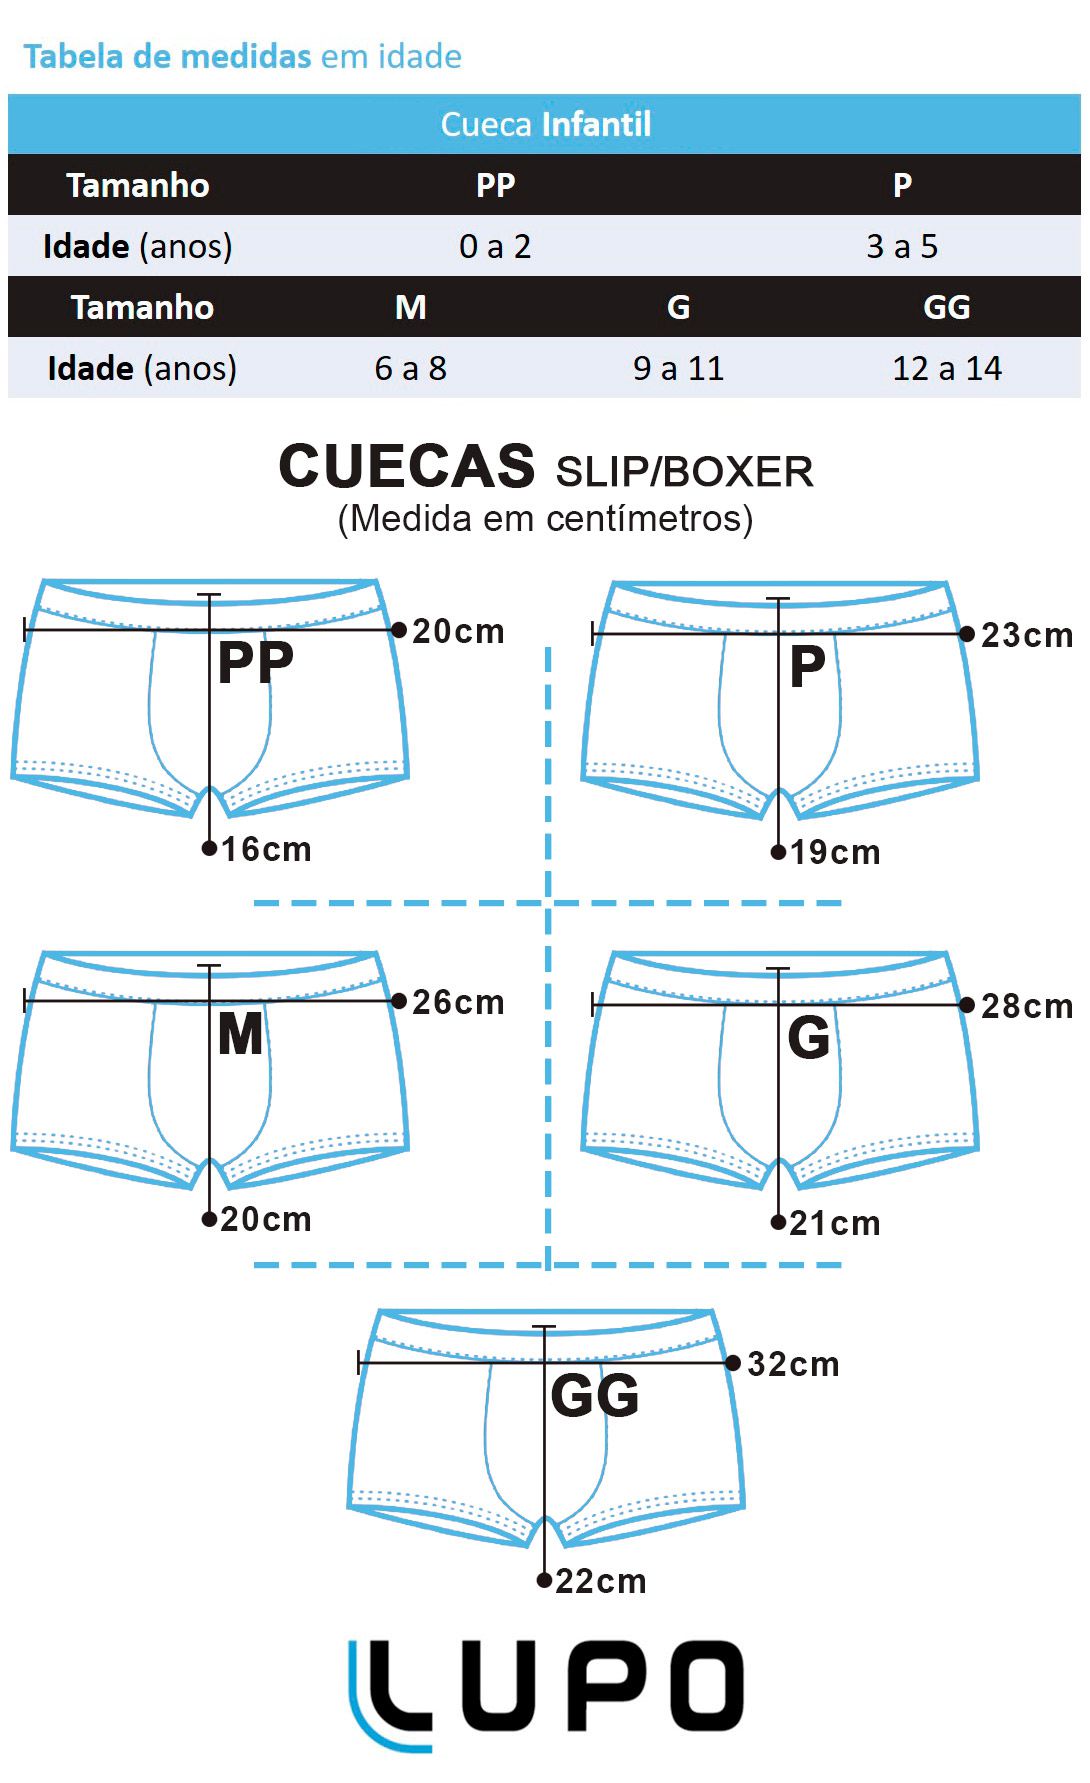 Cueca Infantil Boxer Kit com 10 cuecas Branca e Preta - Lupo: Tabela de medidas